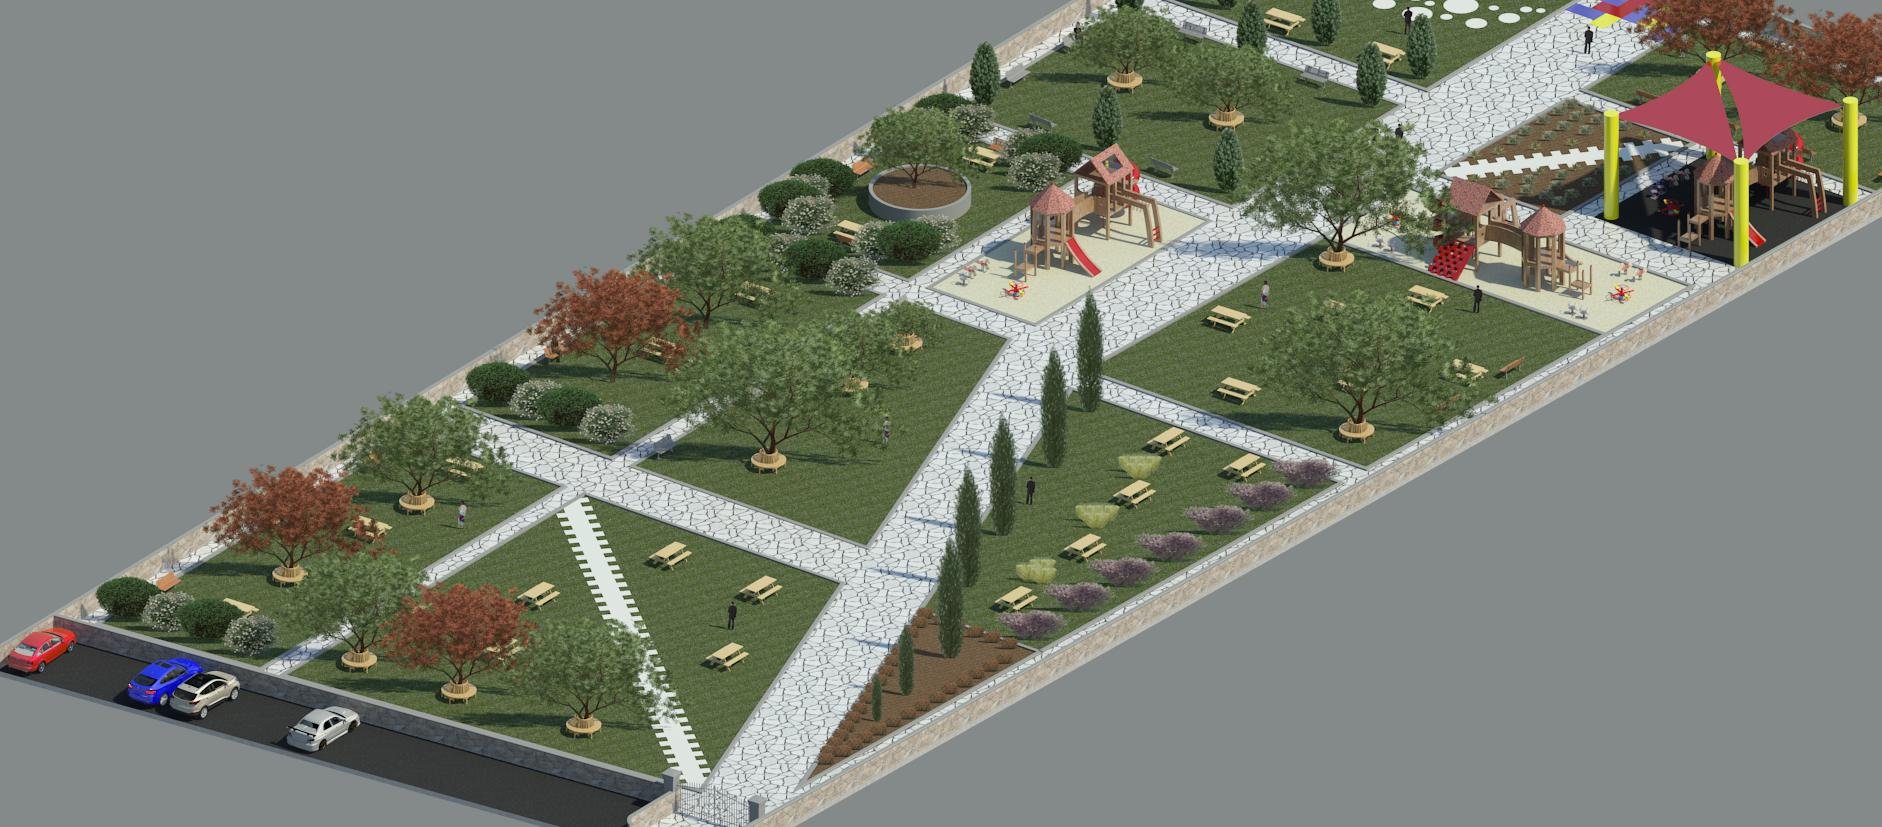 مجلس كفرمندا يحصل على موافقة نهائية لبناء حديقة عامة بمساحة 7 دونمات-0